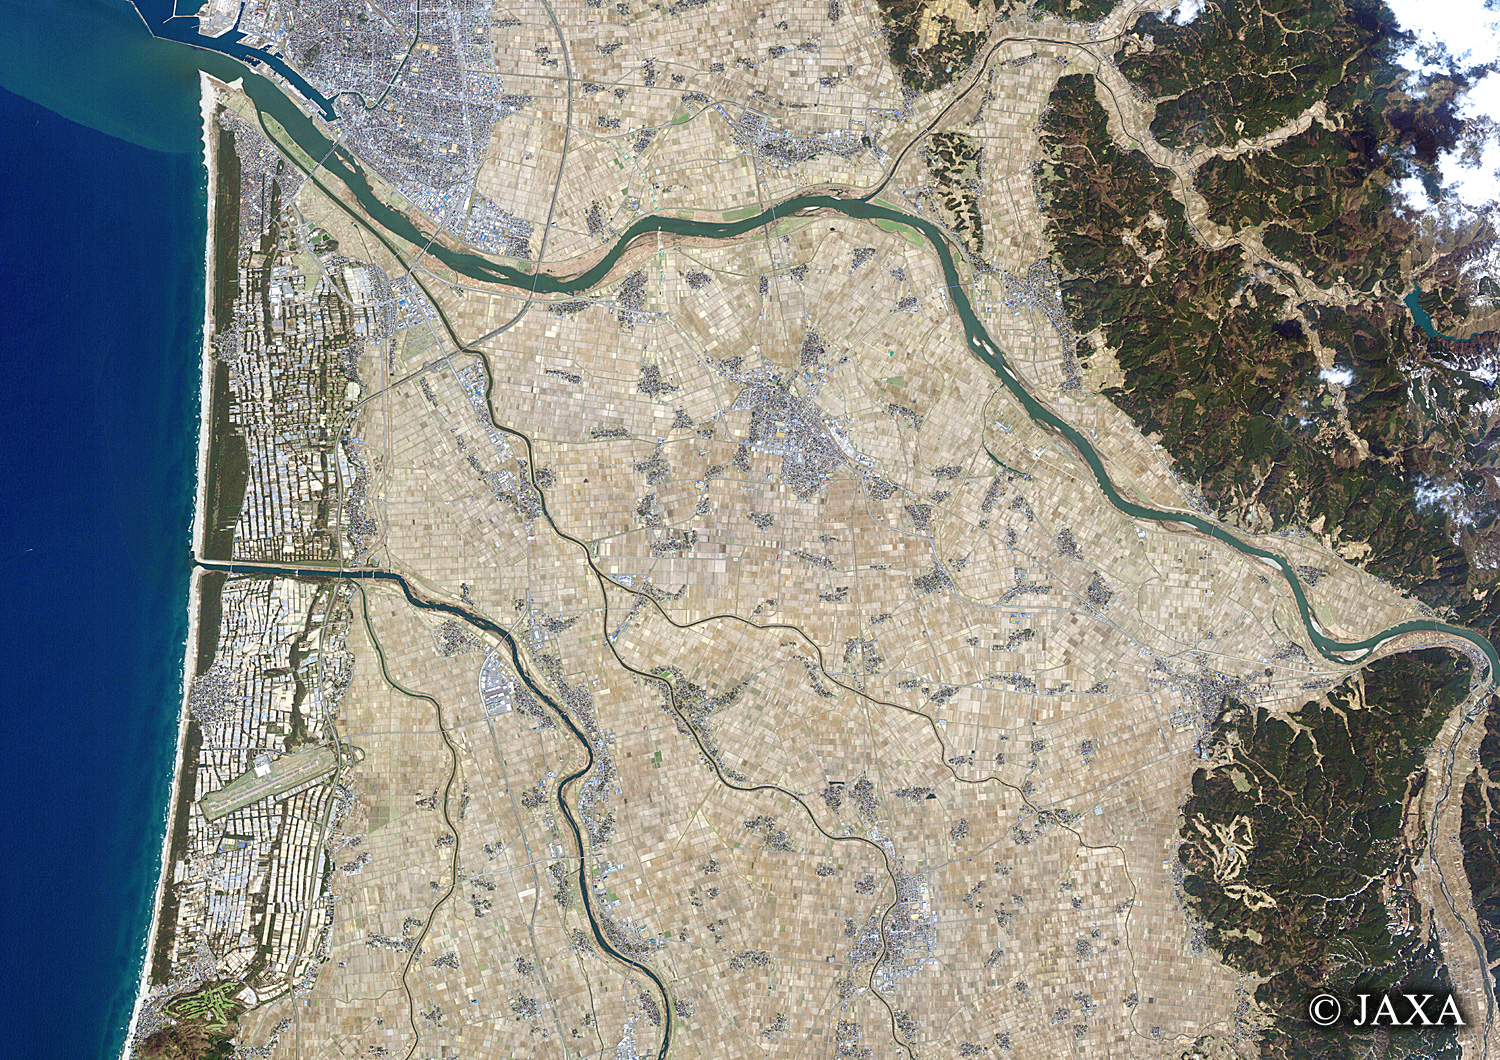 だいちから見た日本の都市 庄内町:衛星画像